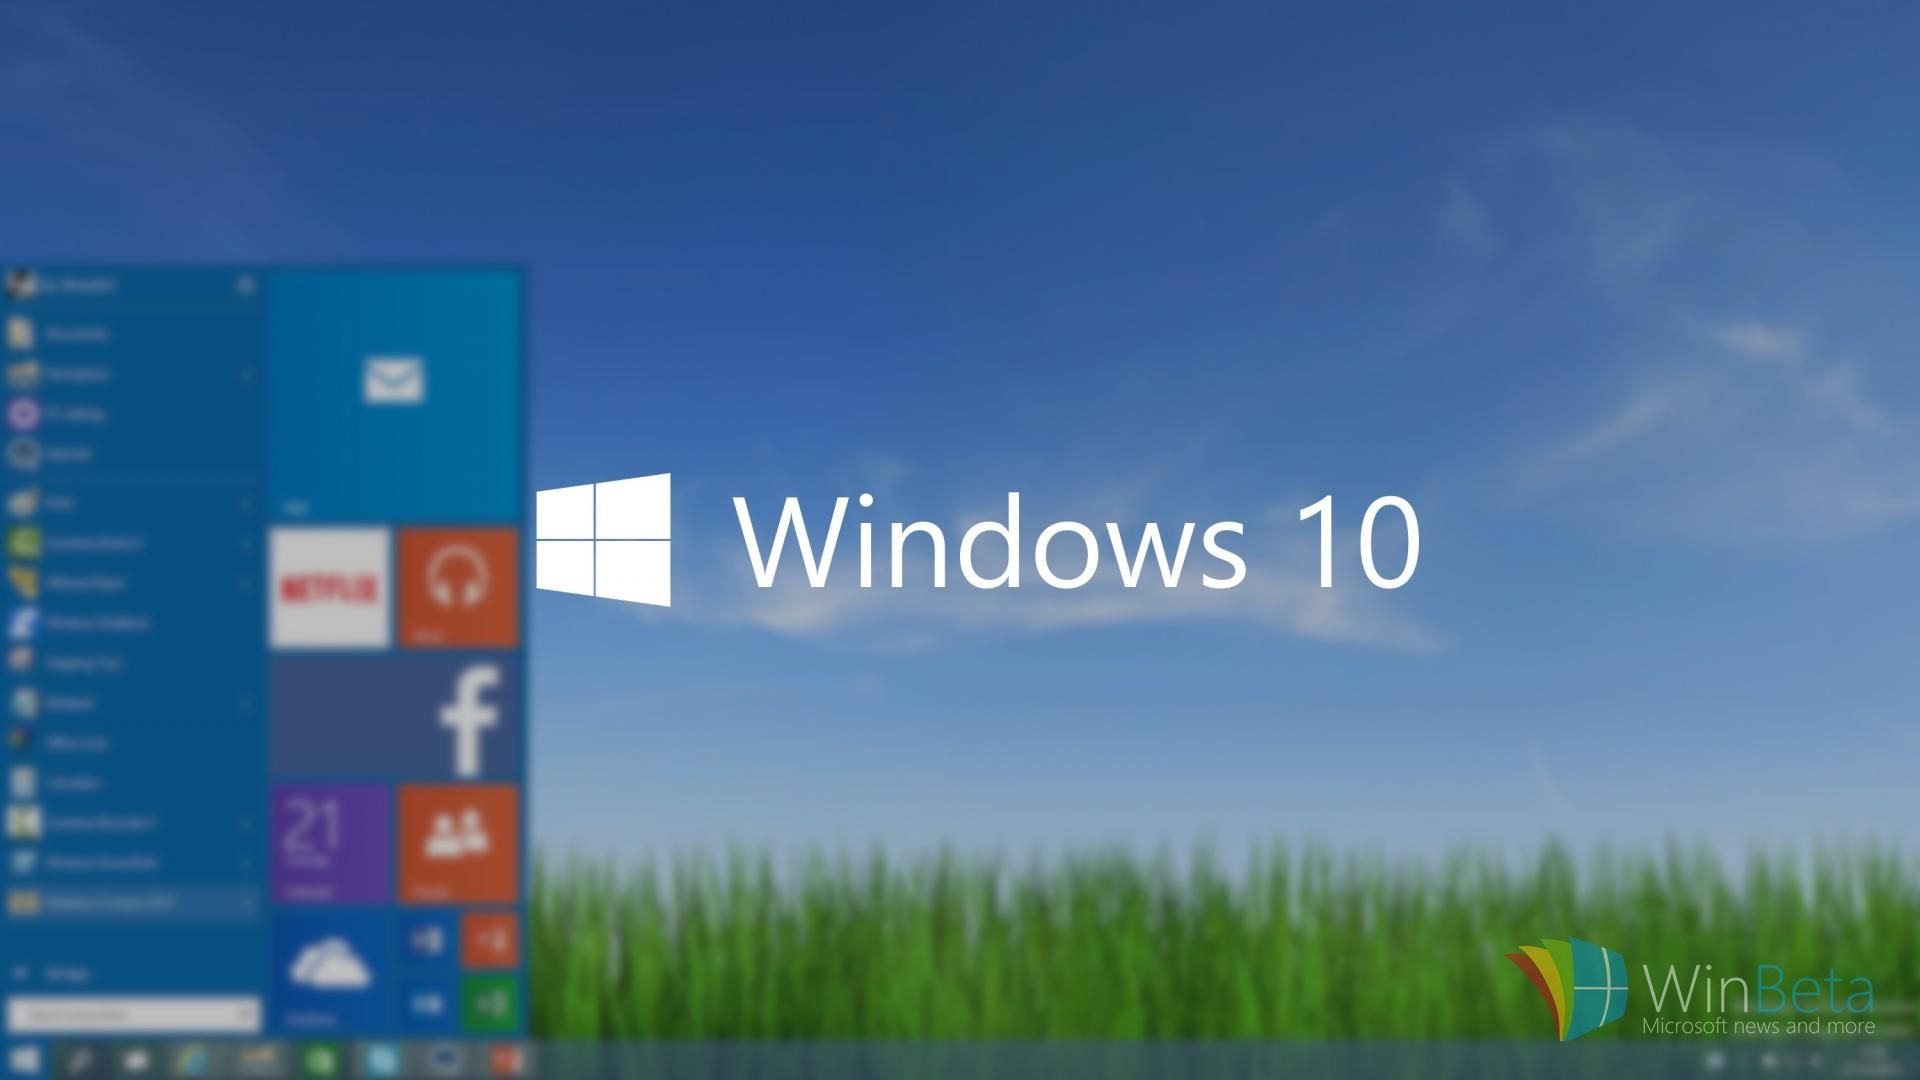 Продажи Windows 10 официально стартовали